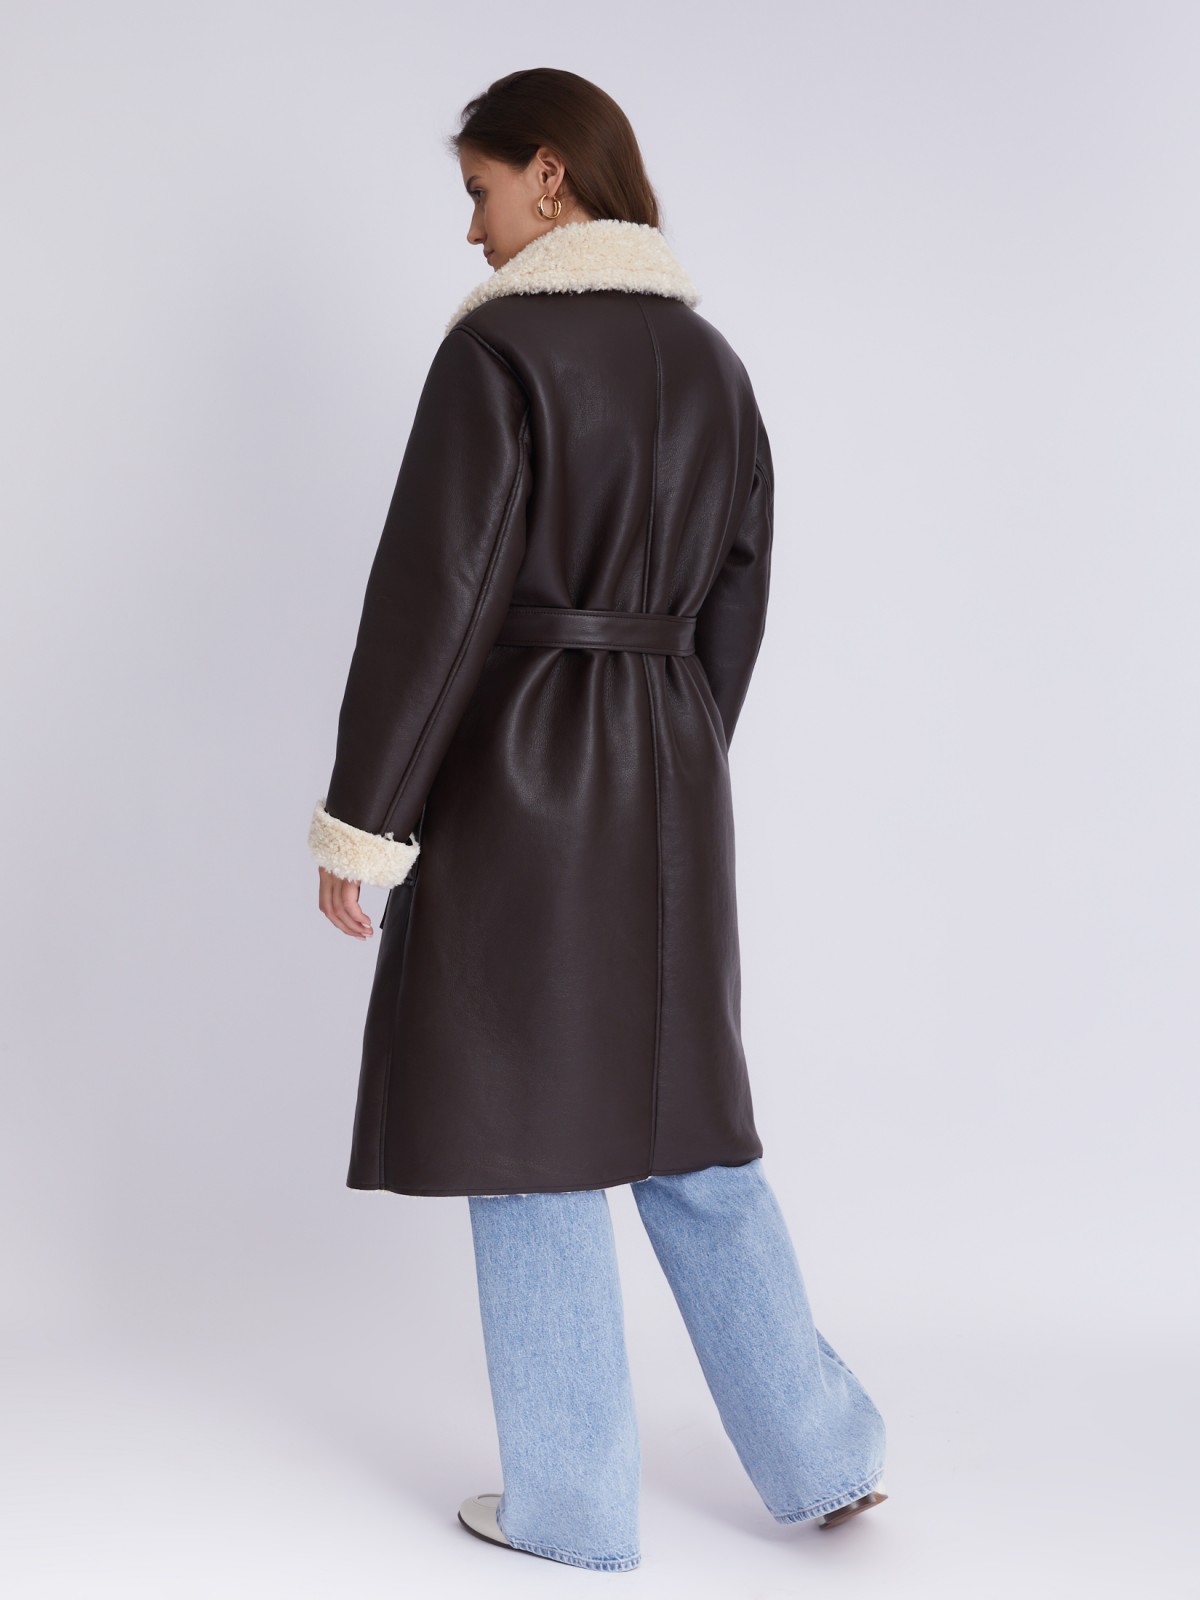 Длинное тёплое пальто-дублёнка из экокожи с искусственным мехом по подкладке и с поясом